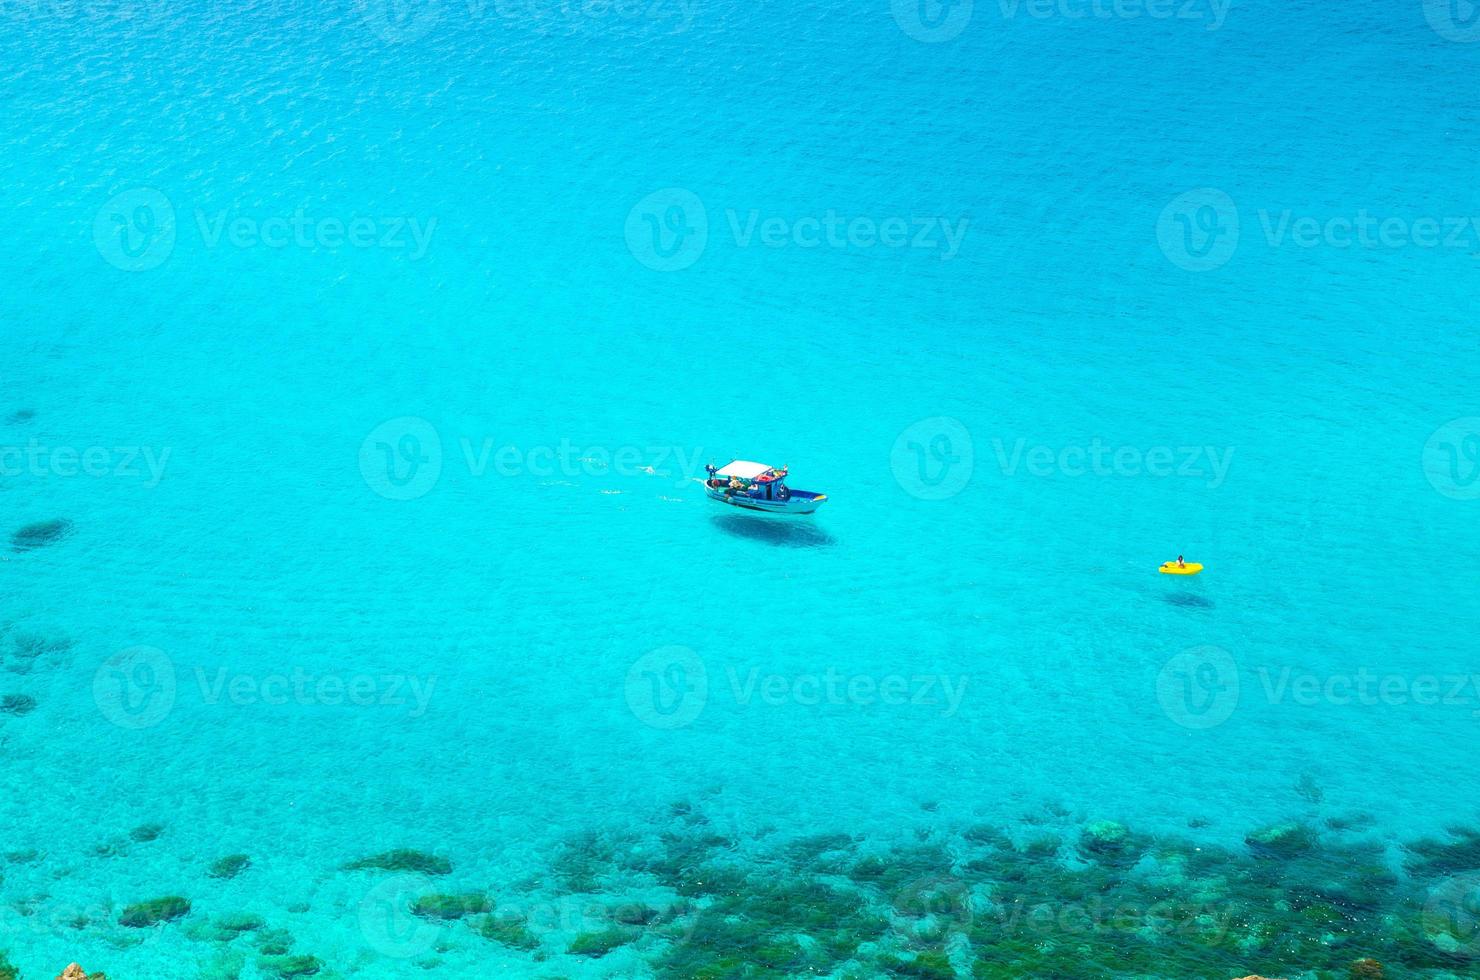 Yacht de pêche et canot pneumatique dans la lagune de capo vaticano, calabre, italie photo